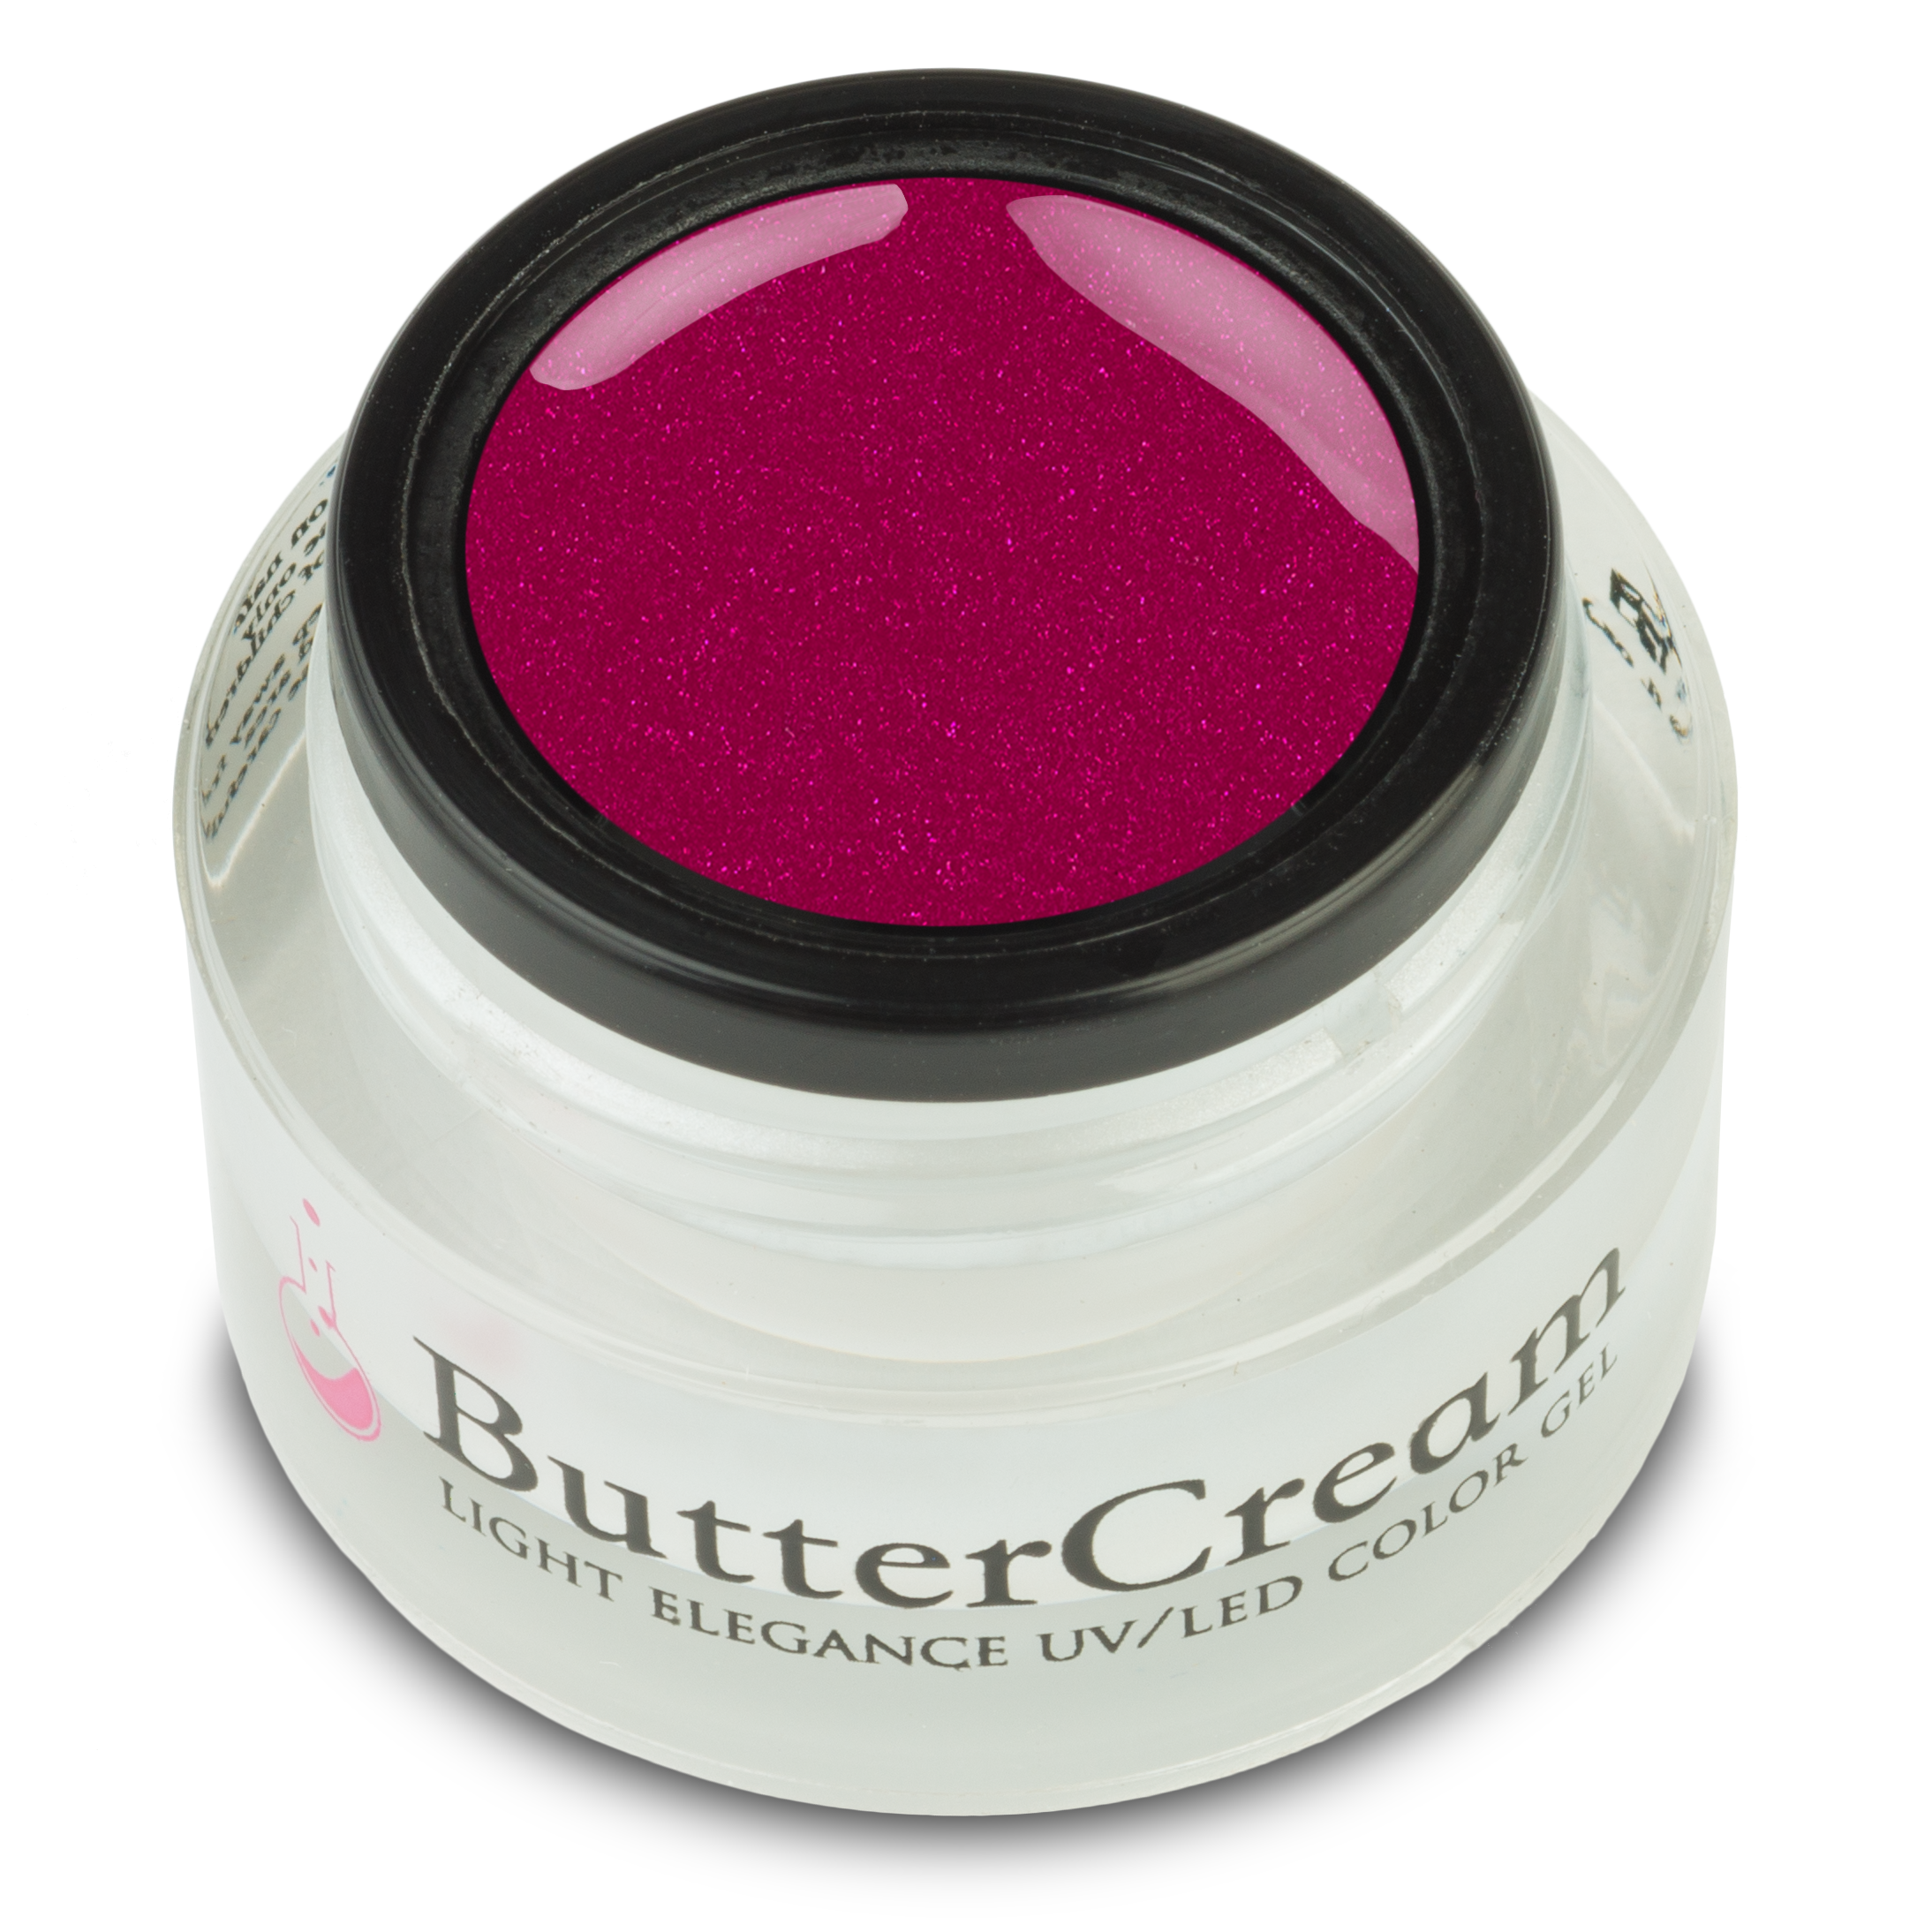 Light Elegance ButterCream - Cherry Picked